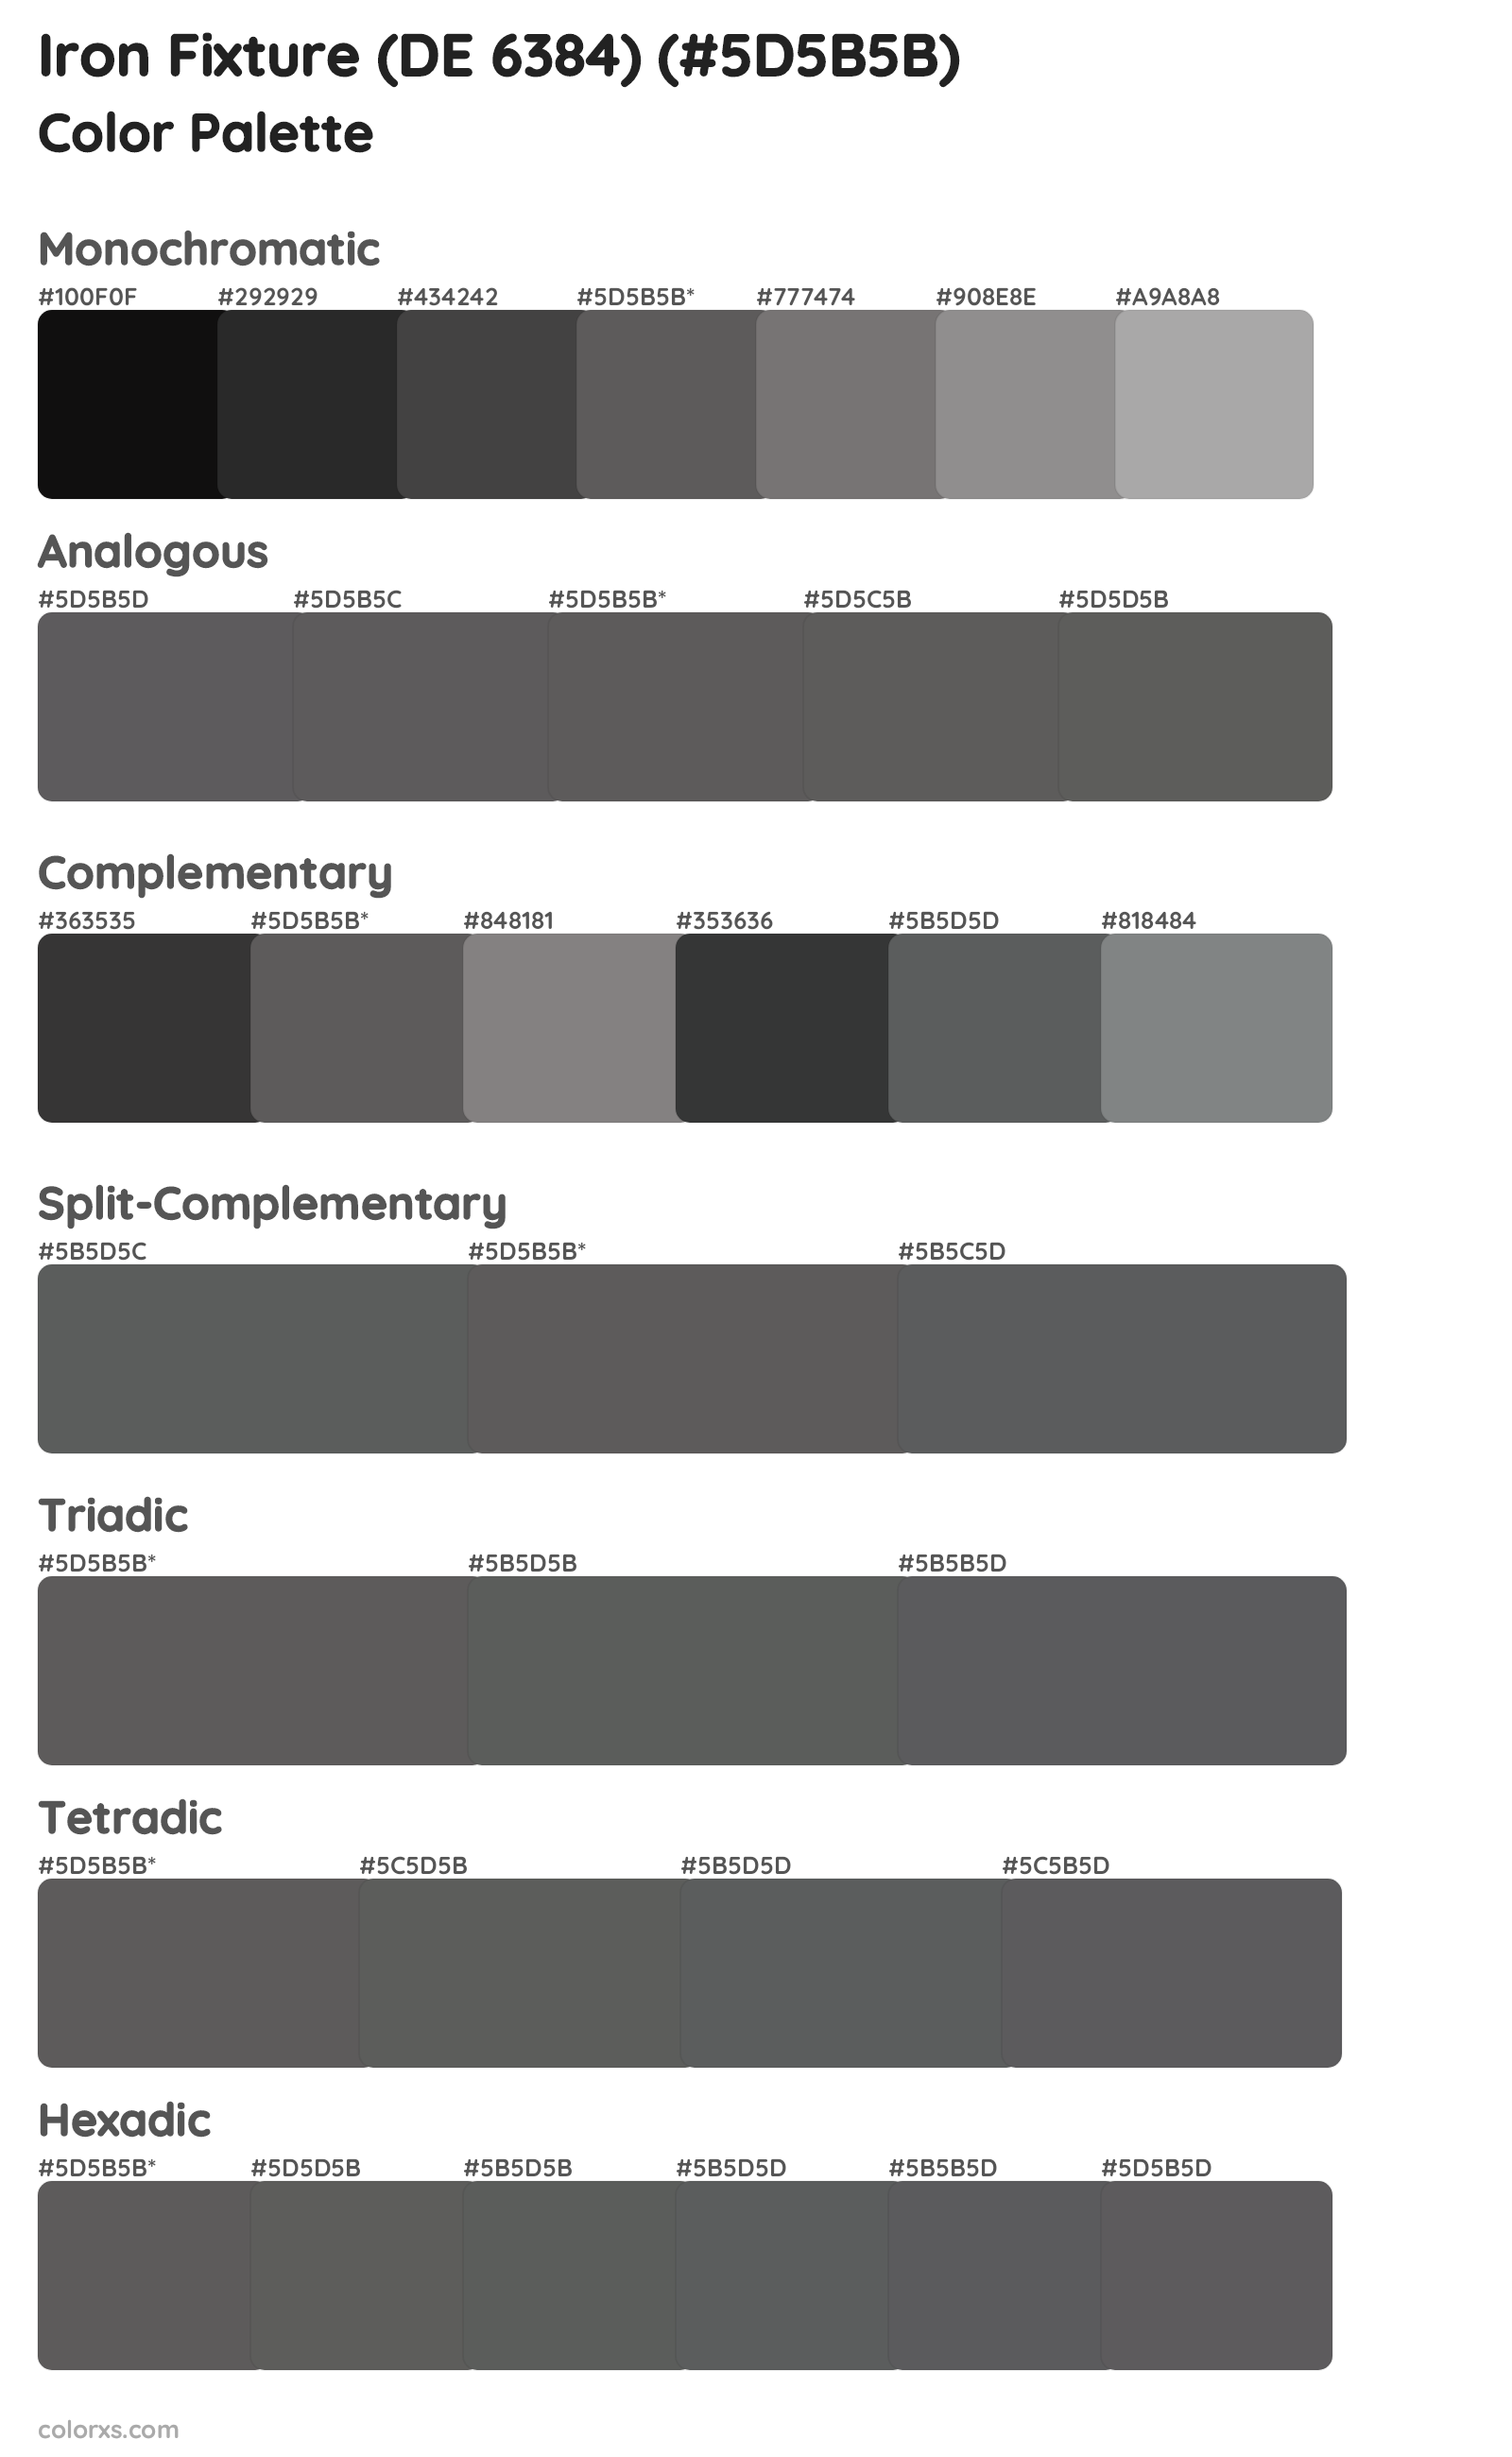 Iron Fixture (DE 6384) Color Scheme Palettes